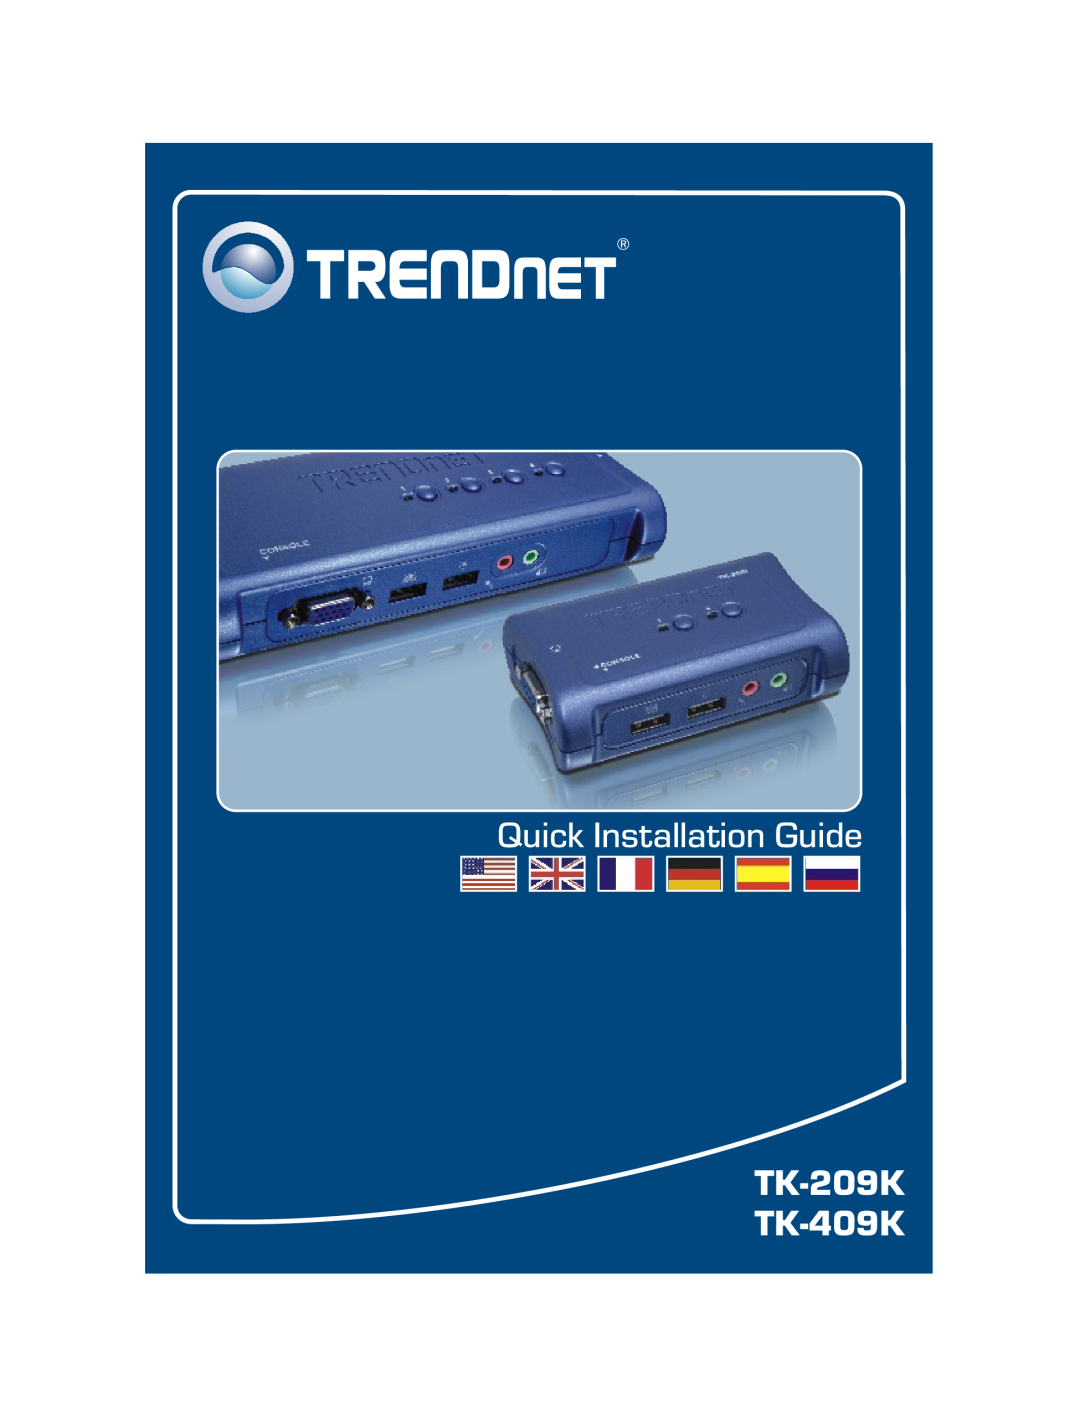 TRENDnet tk-409k, tk-209k, TK-209K, TK-409K manual Quick Installation Guide, TK-209K TK-409K 